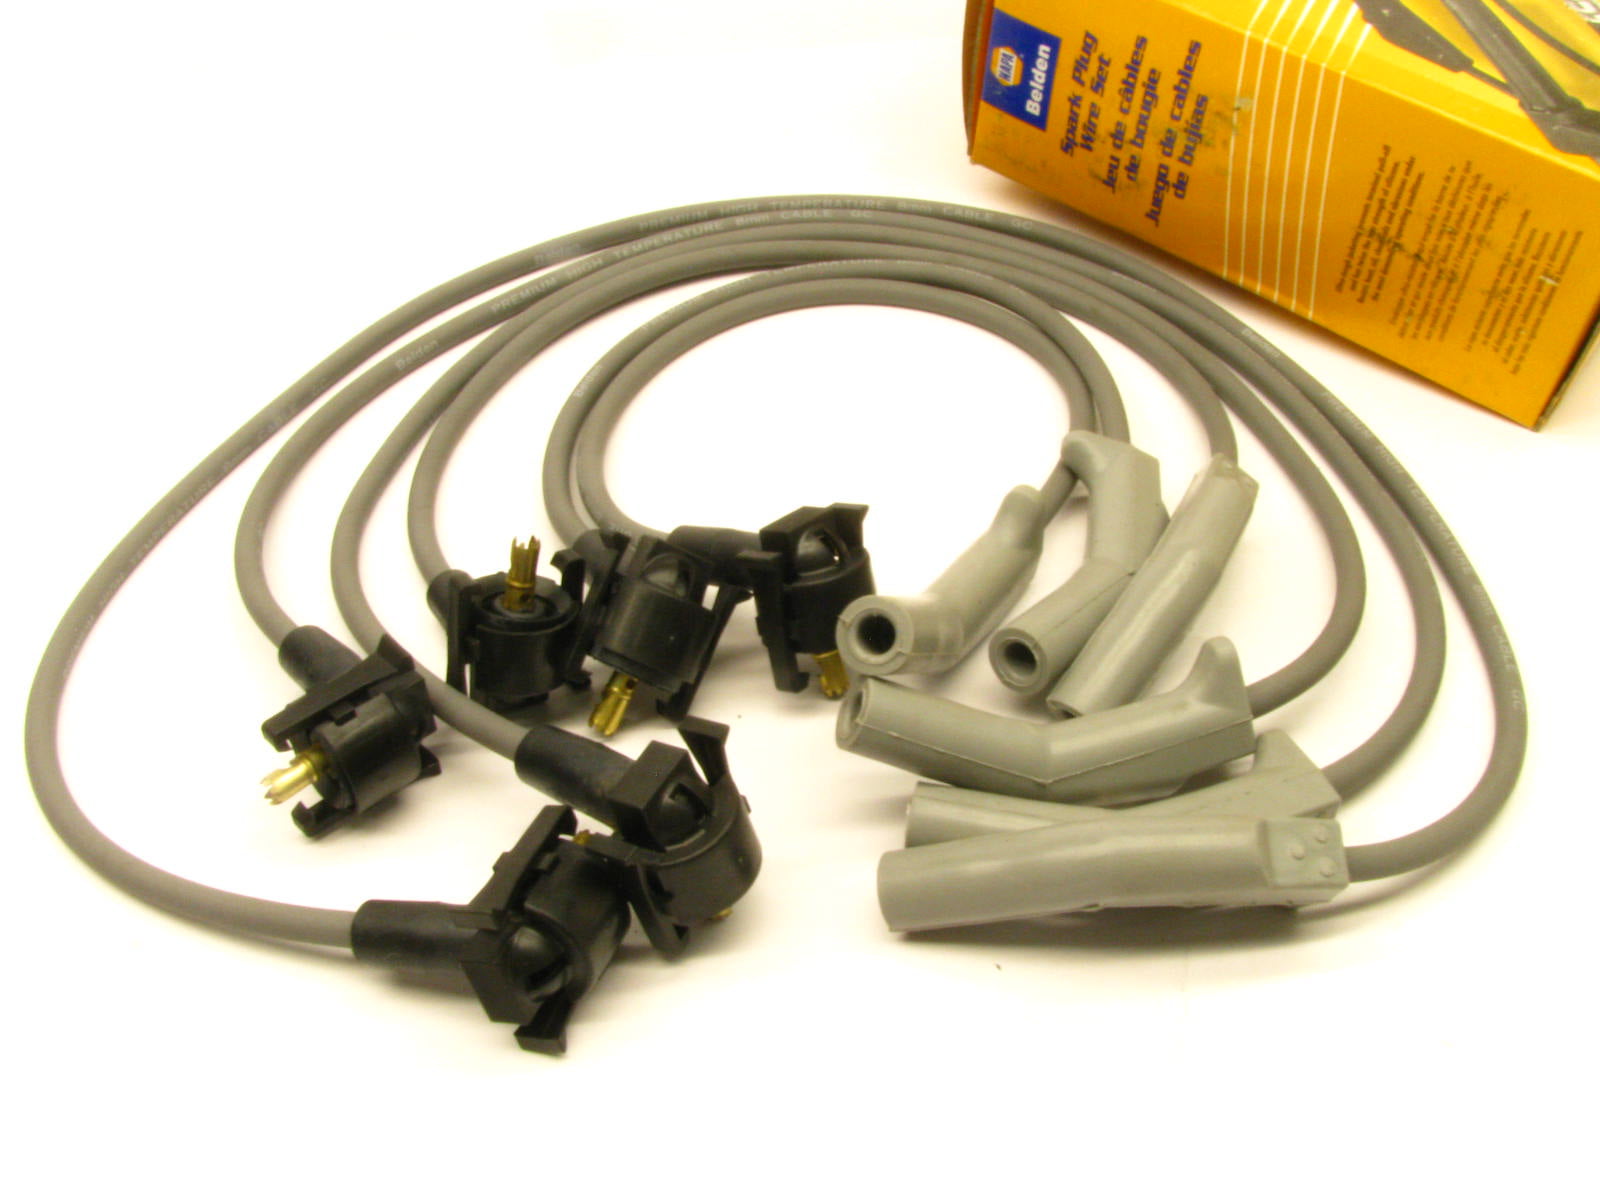 Napa 700914 Ignition Spark Plug Wire Set Fits 1995 Ford Windstar 3.8L-V6